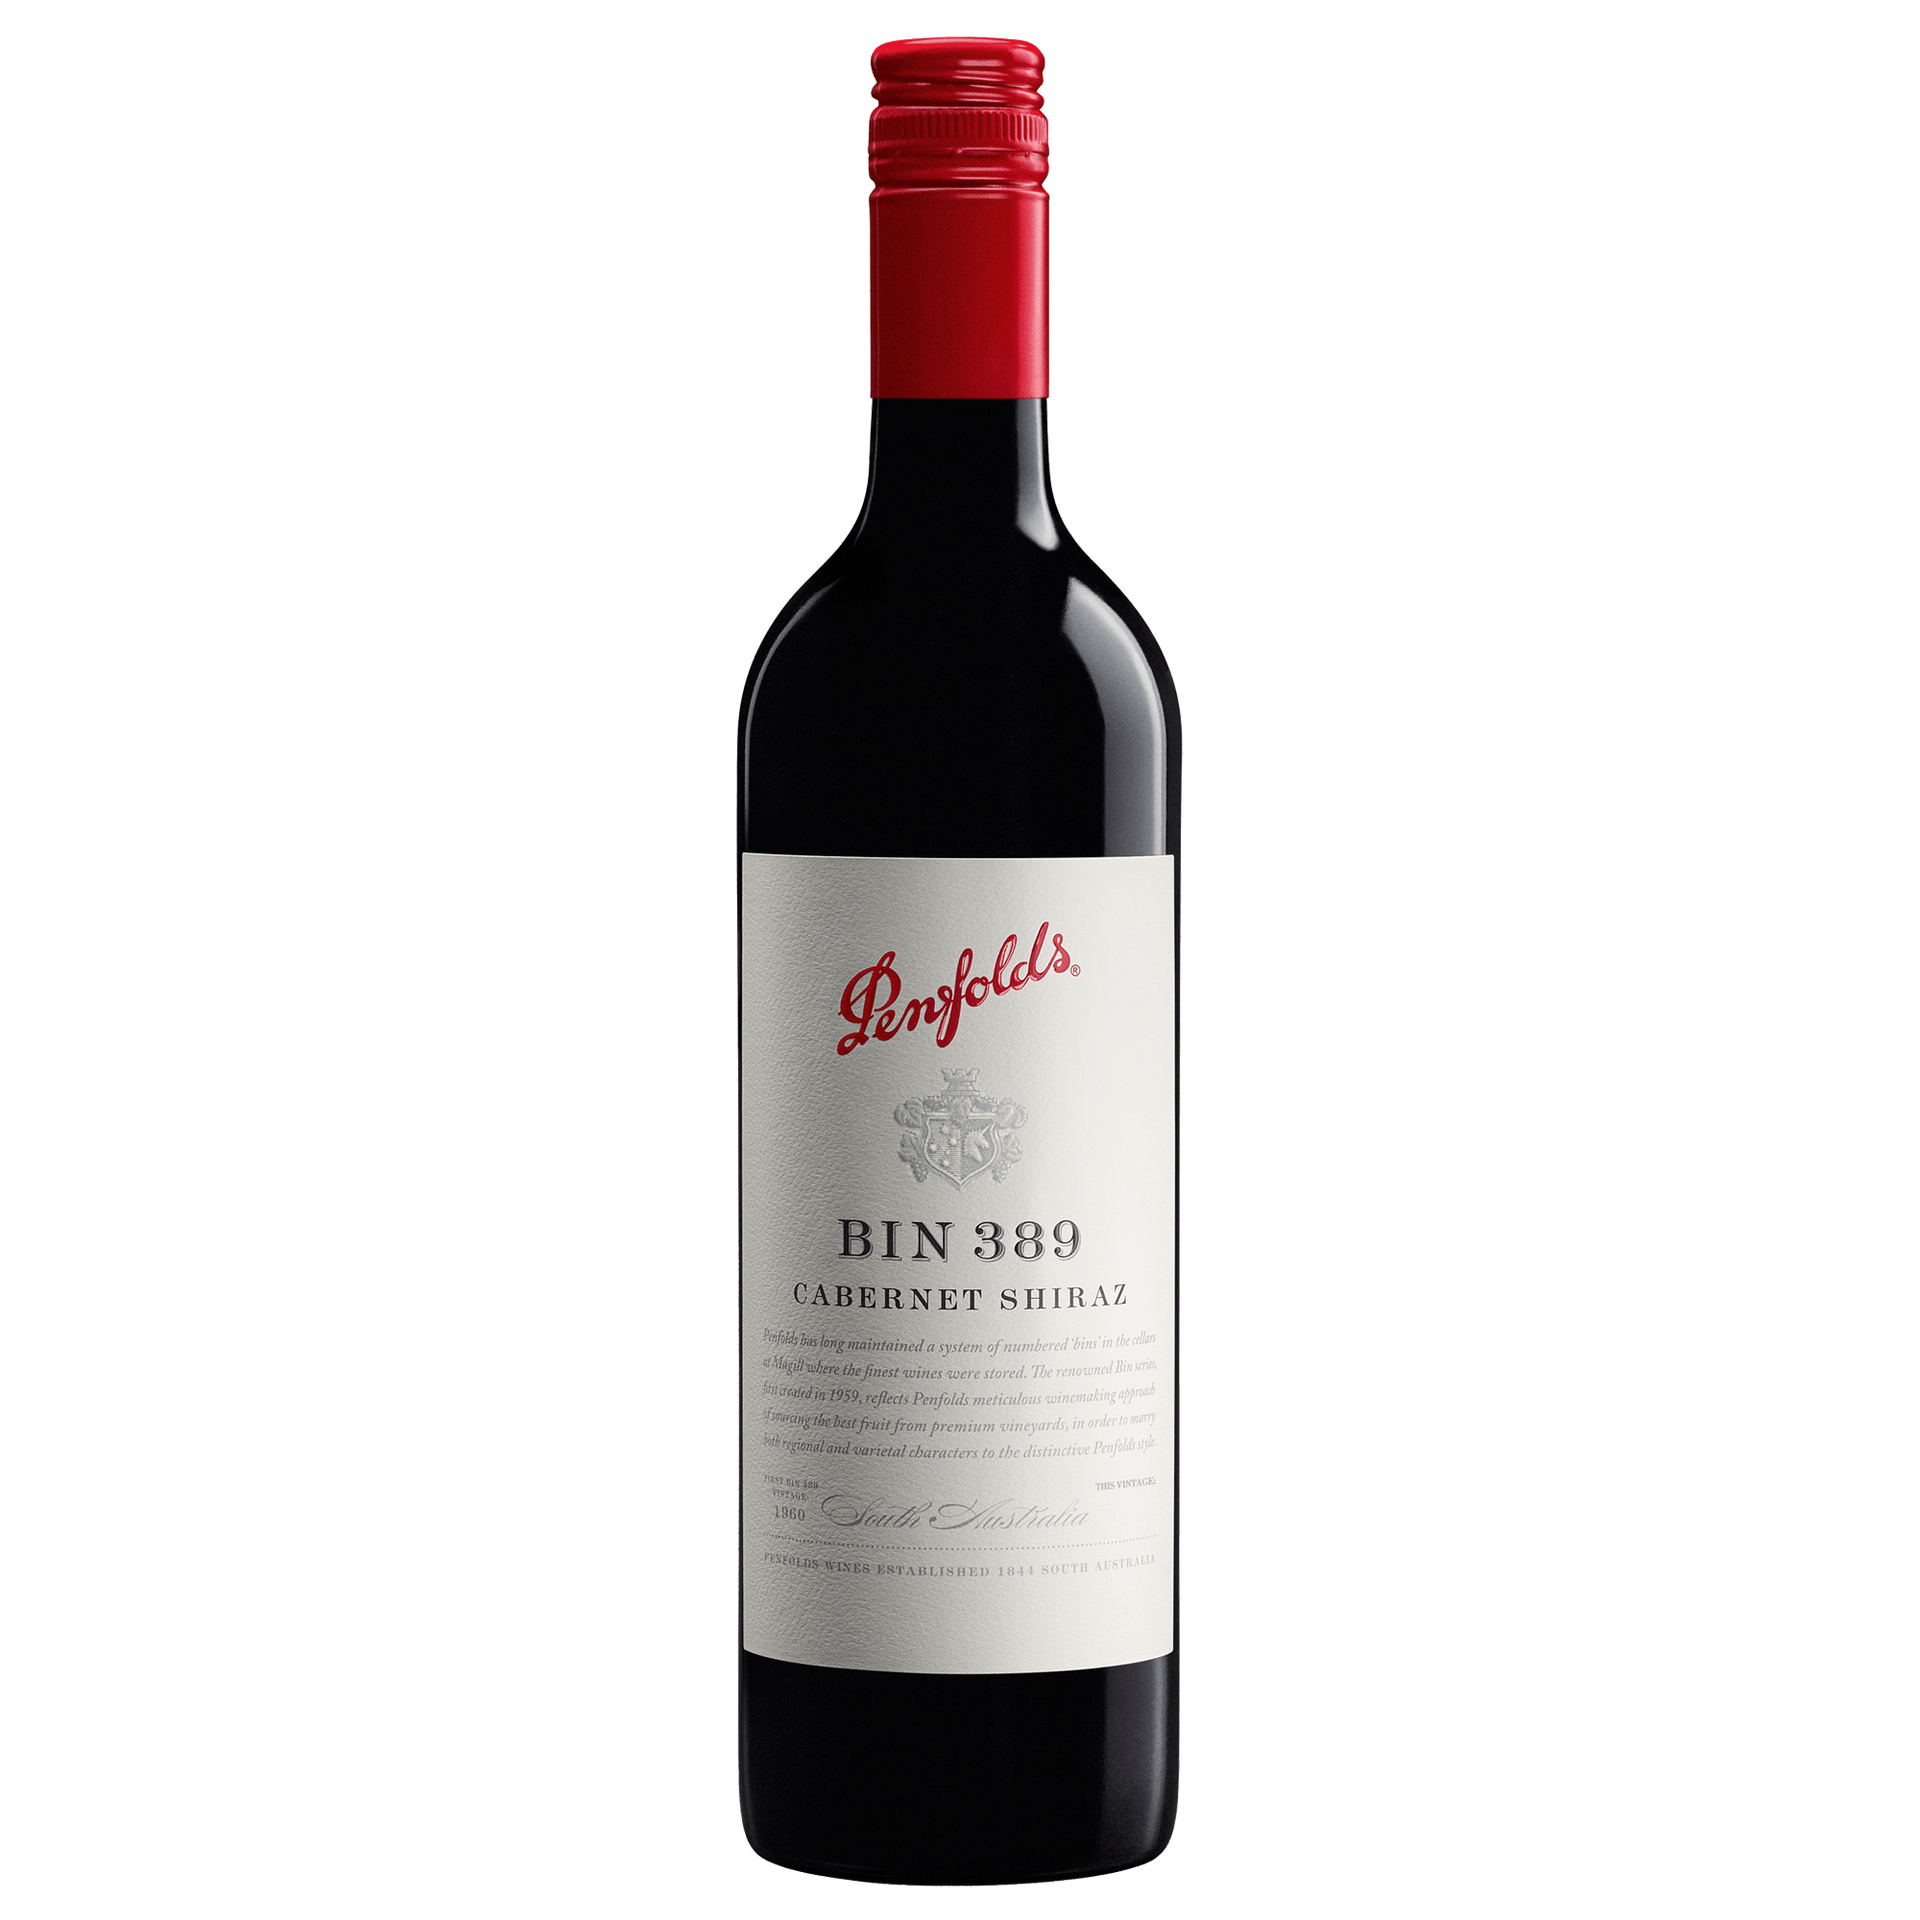 Penfolds Bin 389 vintage 2017 single bottle